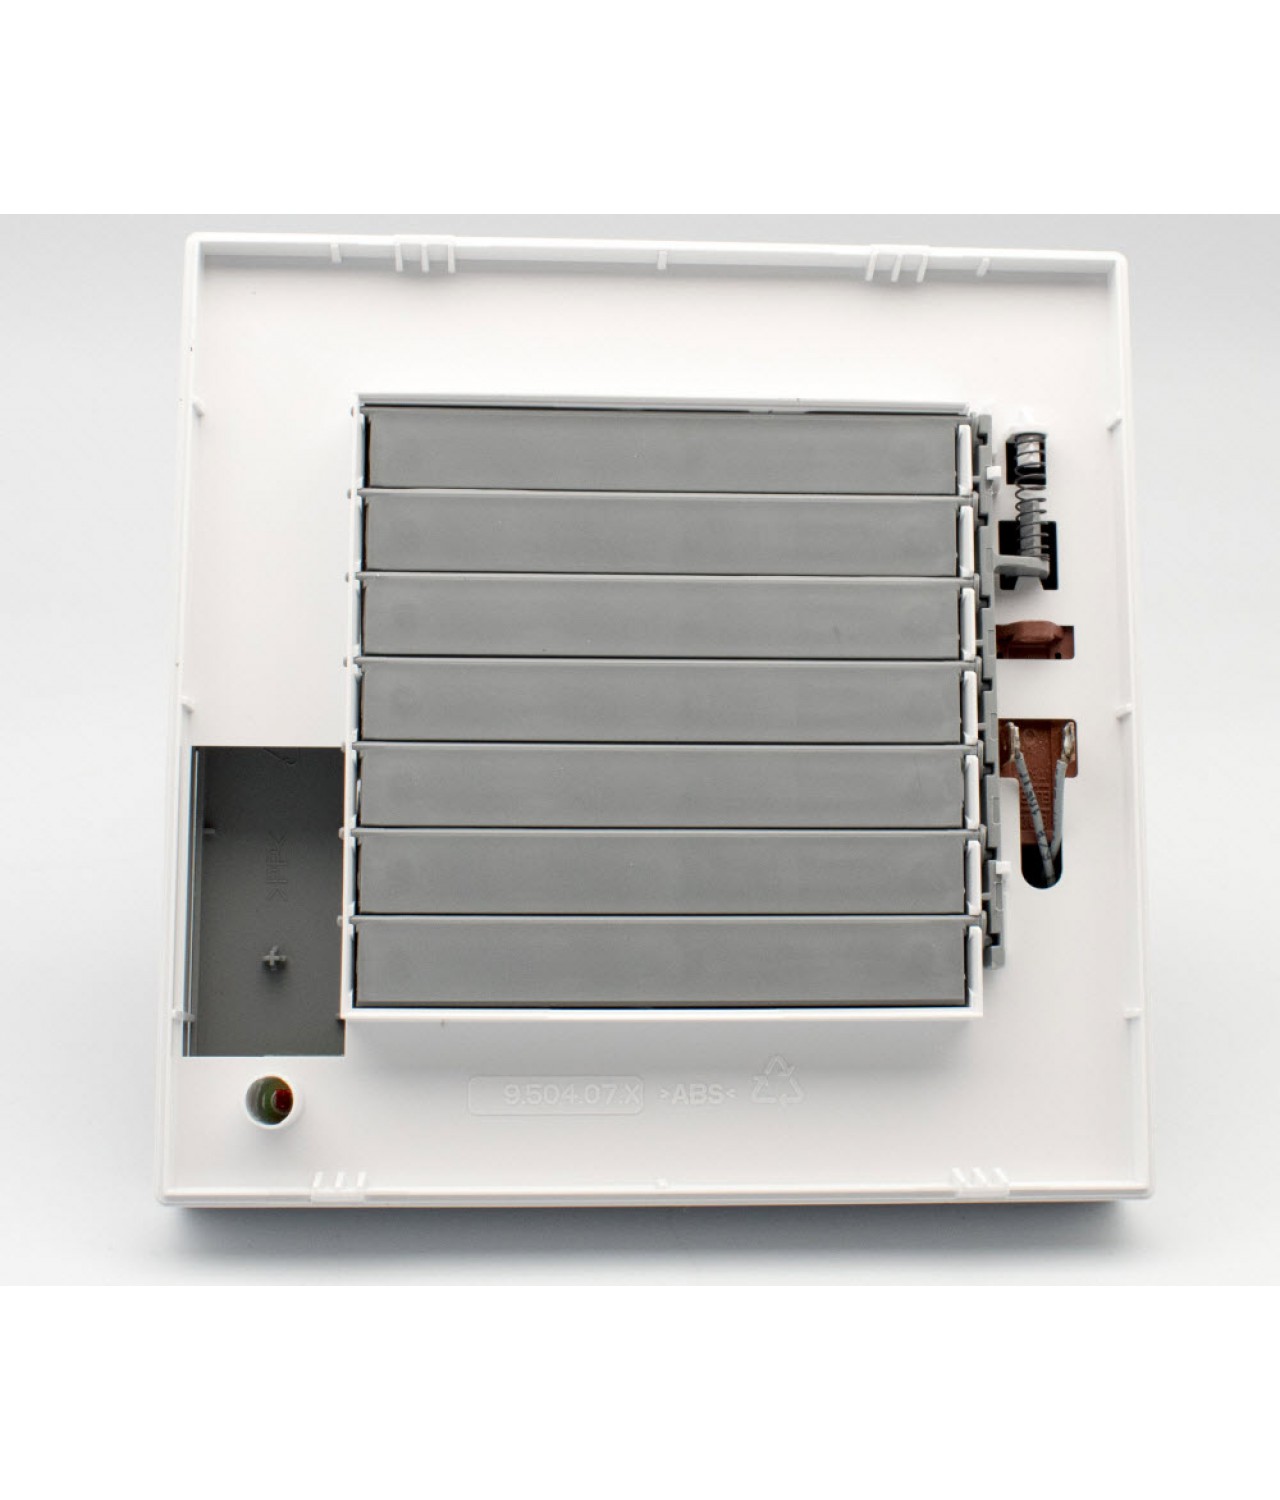 Вентилятор с автоматическими жалюзи, датчиком движения и таймером IN A 15/6 PIR BB, Ø150 мм - изображение 3